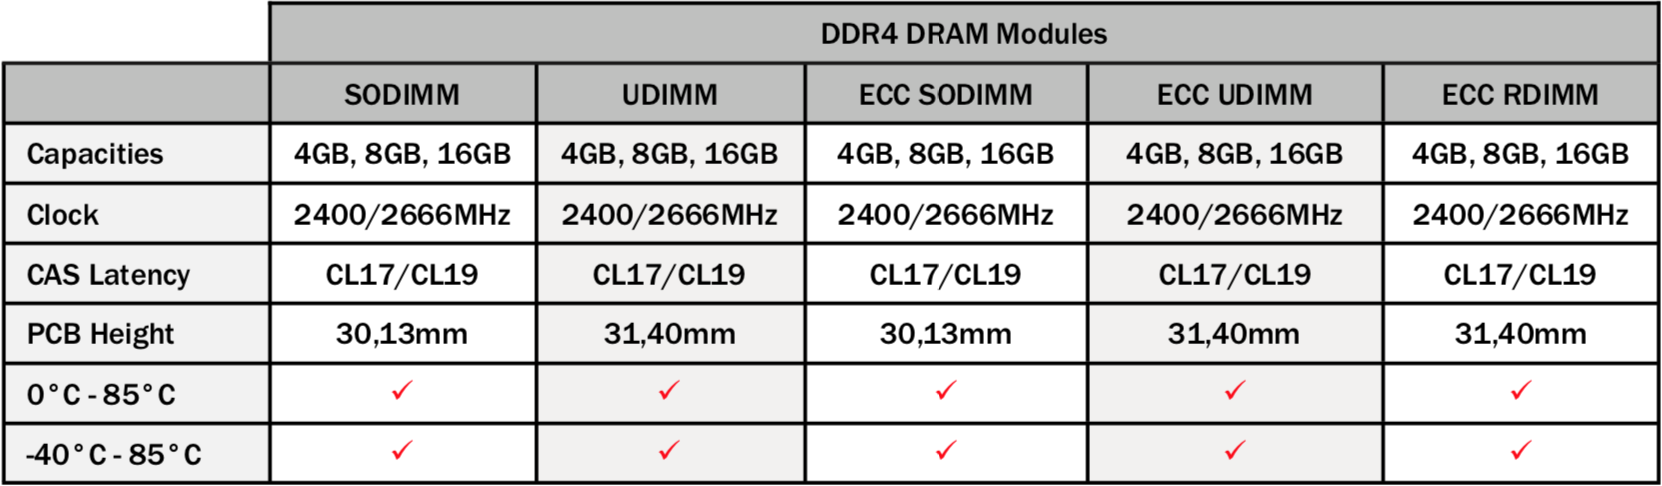 Silicom Power DDR3 DRAM Modules